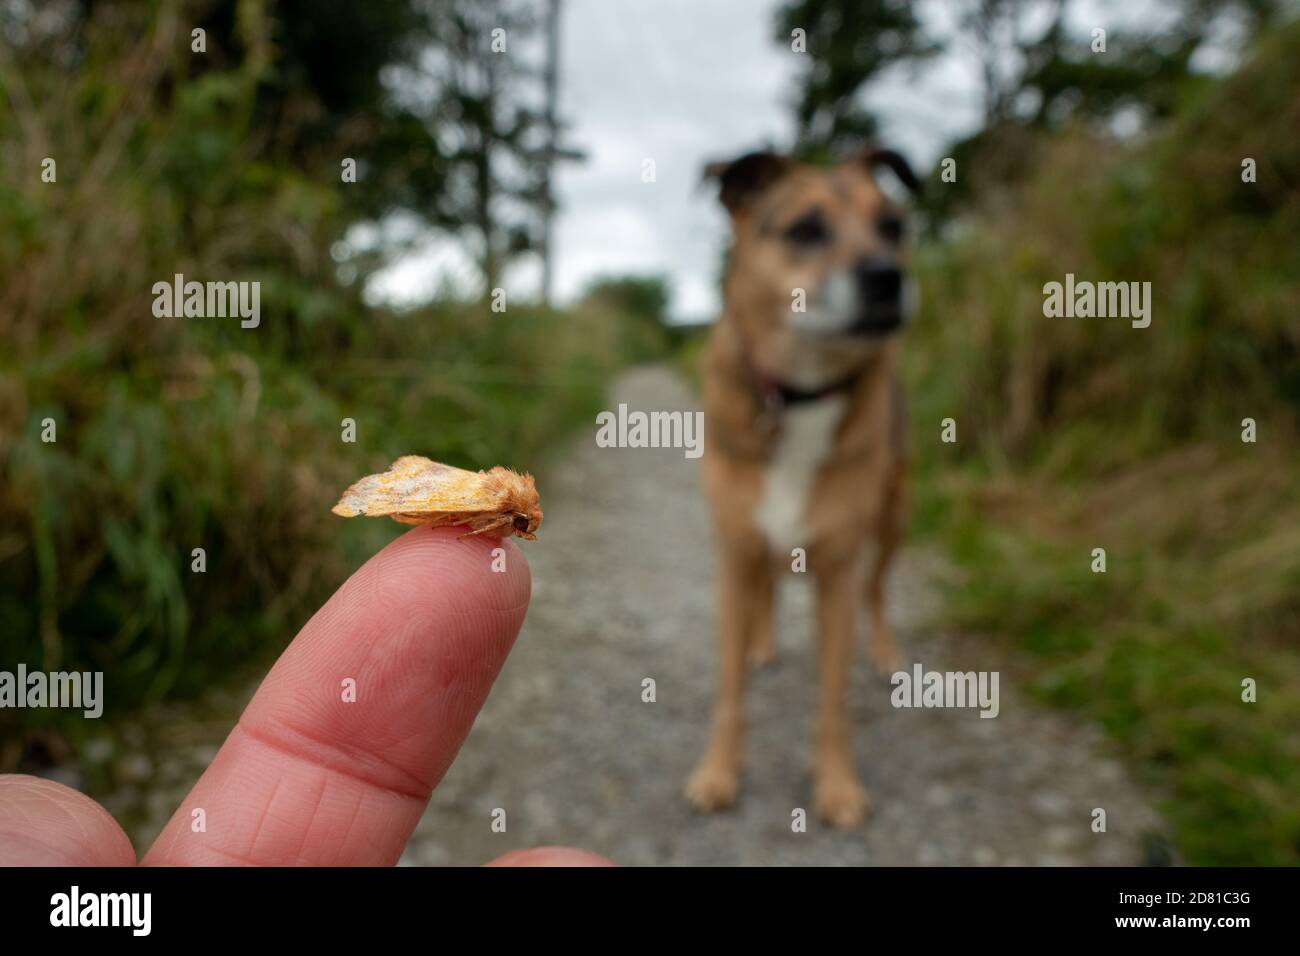 Mittelsperriges Sperling Motte (Atethmia centrago) aus der Mitte des Weges von einer Person, die ihren Hund, britische Tierwelt gerettet Stockfoto